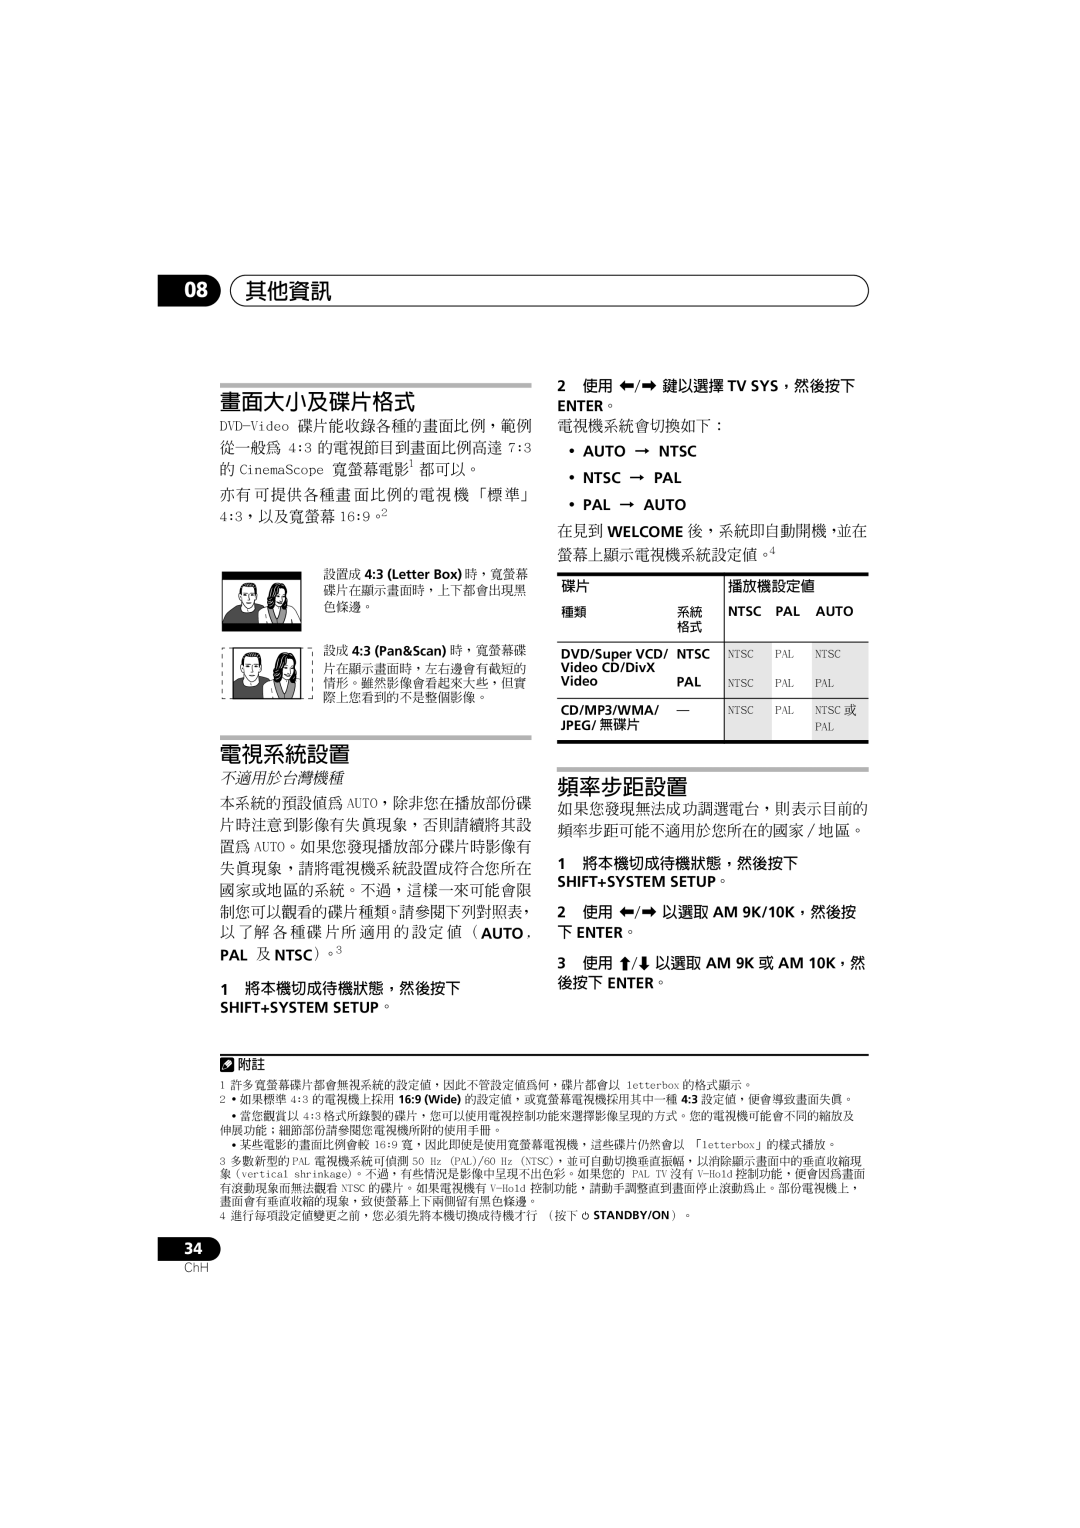 Pioneer S-DV131, S-DV232T manual 畫面大小及碟片格式, 電視系統設置, 頻率步距設置, 不適用於台灣機種, 08其他資訊 